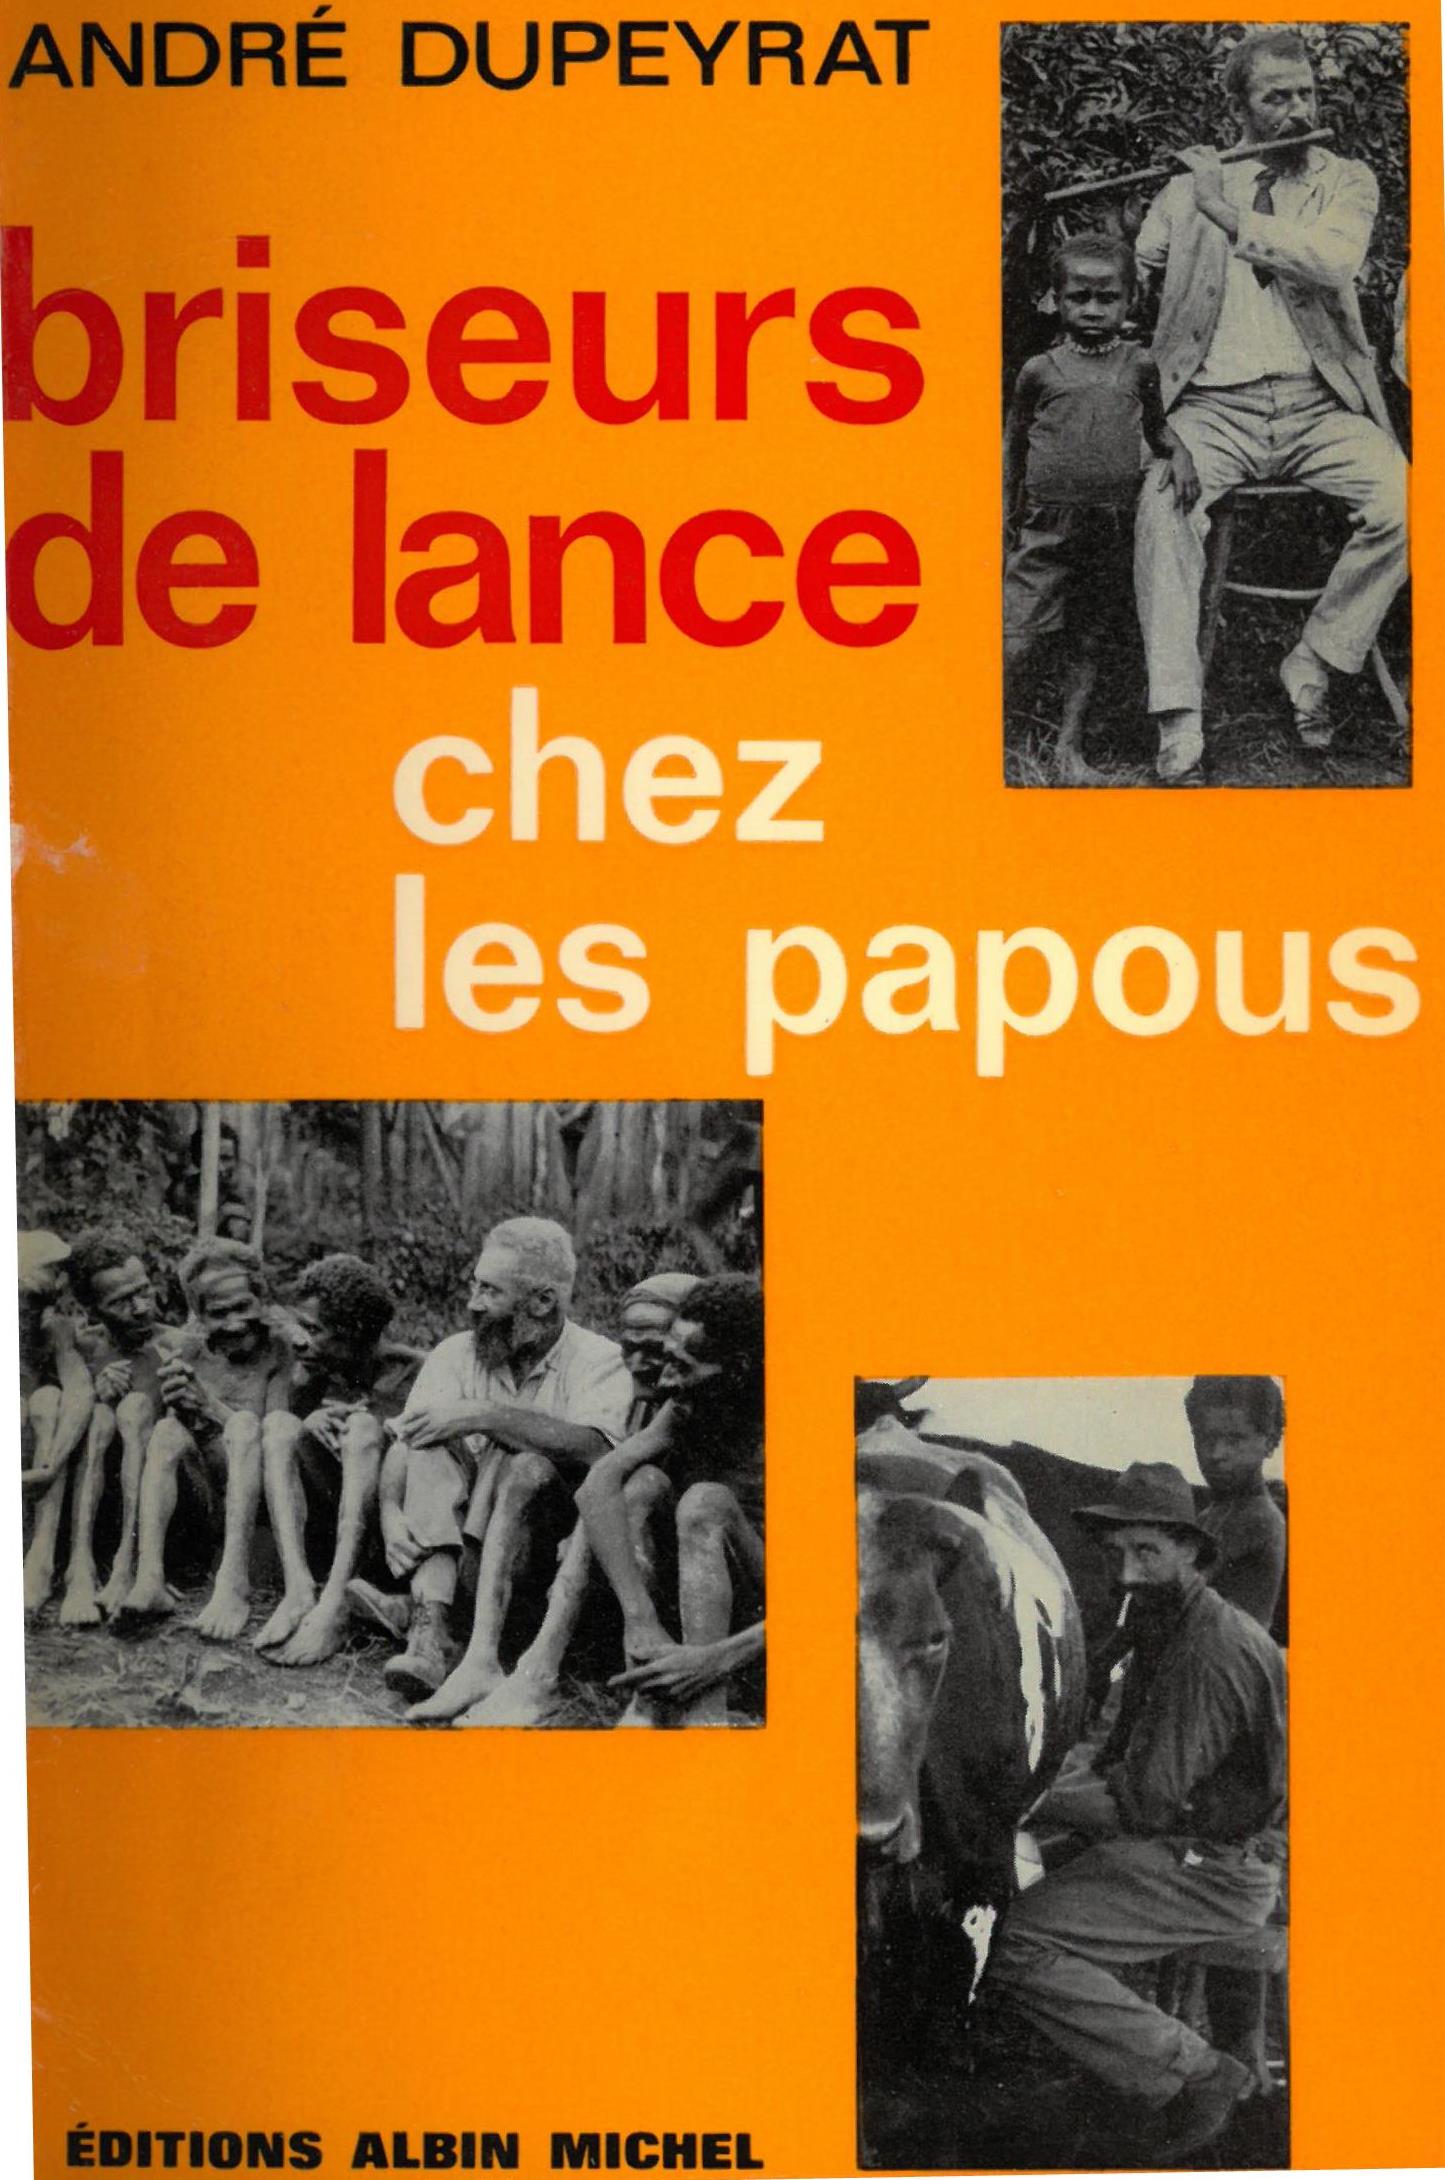 Briseurs de lance chez les papous | André Dupeyrat